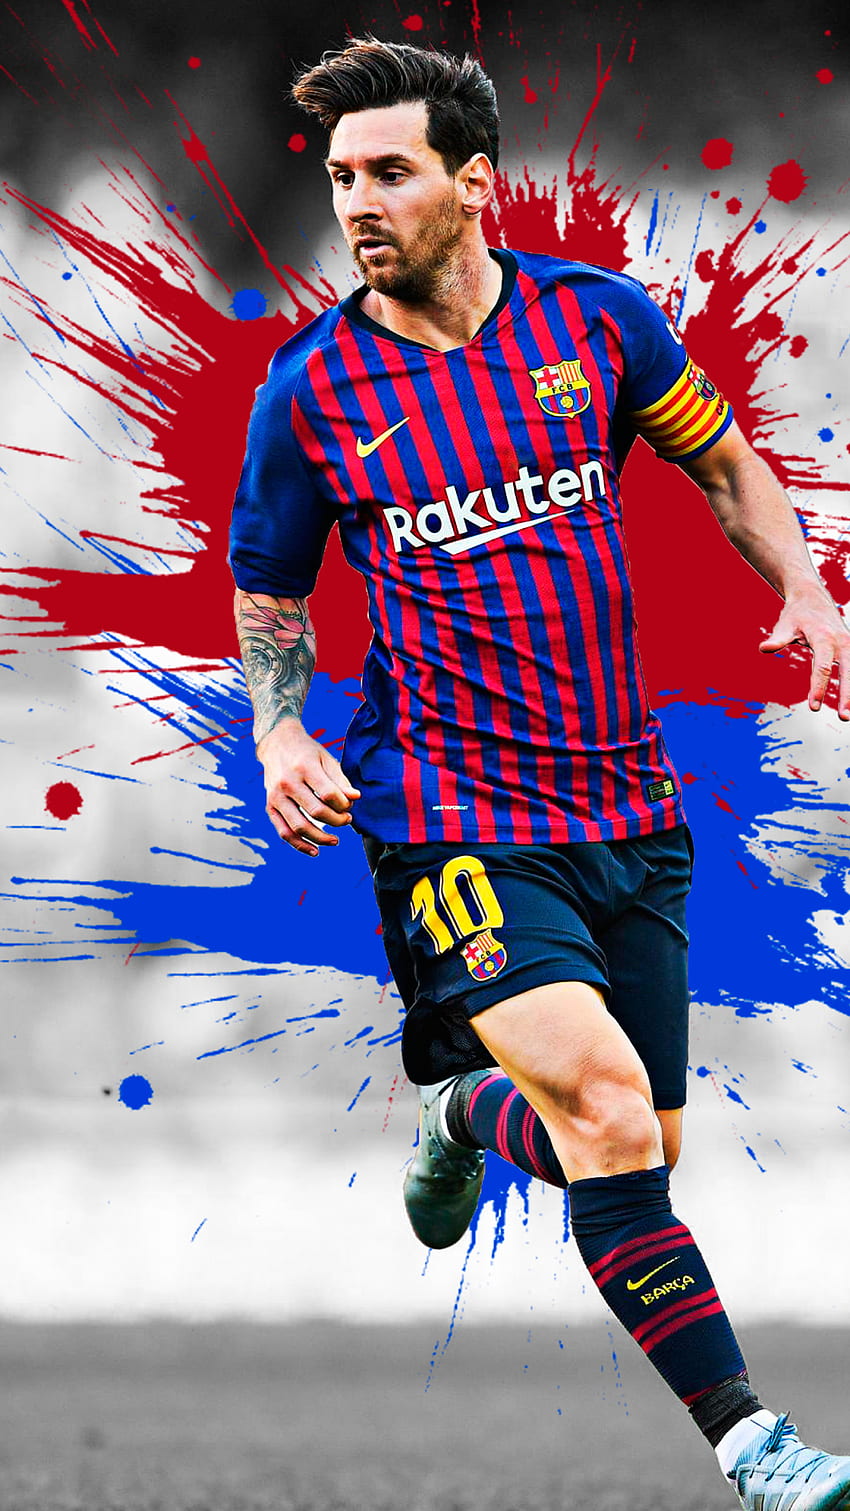 Với hình nền di động của Messi, bạn có thể mang theo tài năng và cá tính của anh ấy bất cứ nơi đâu. Khám phá thiết kế hấp dẫn và độc đáo của hình nền di động Messi để trang trí cho điện thoại của bạn thêm hấp dẫn và đặc biệt.